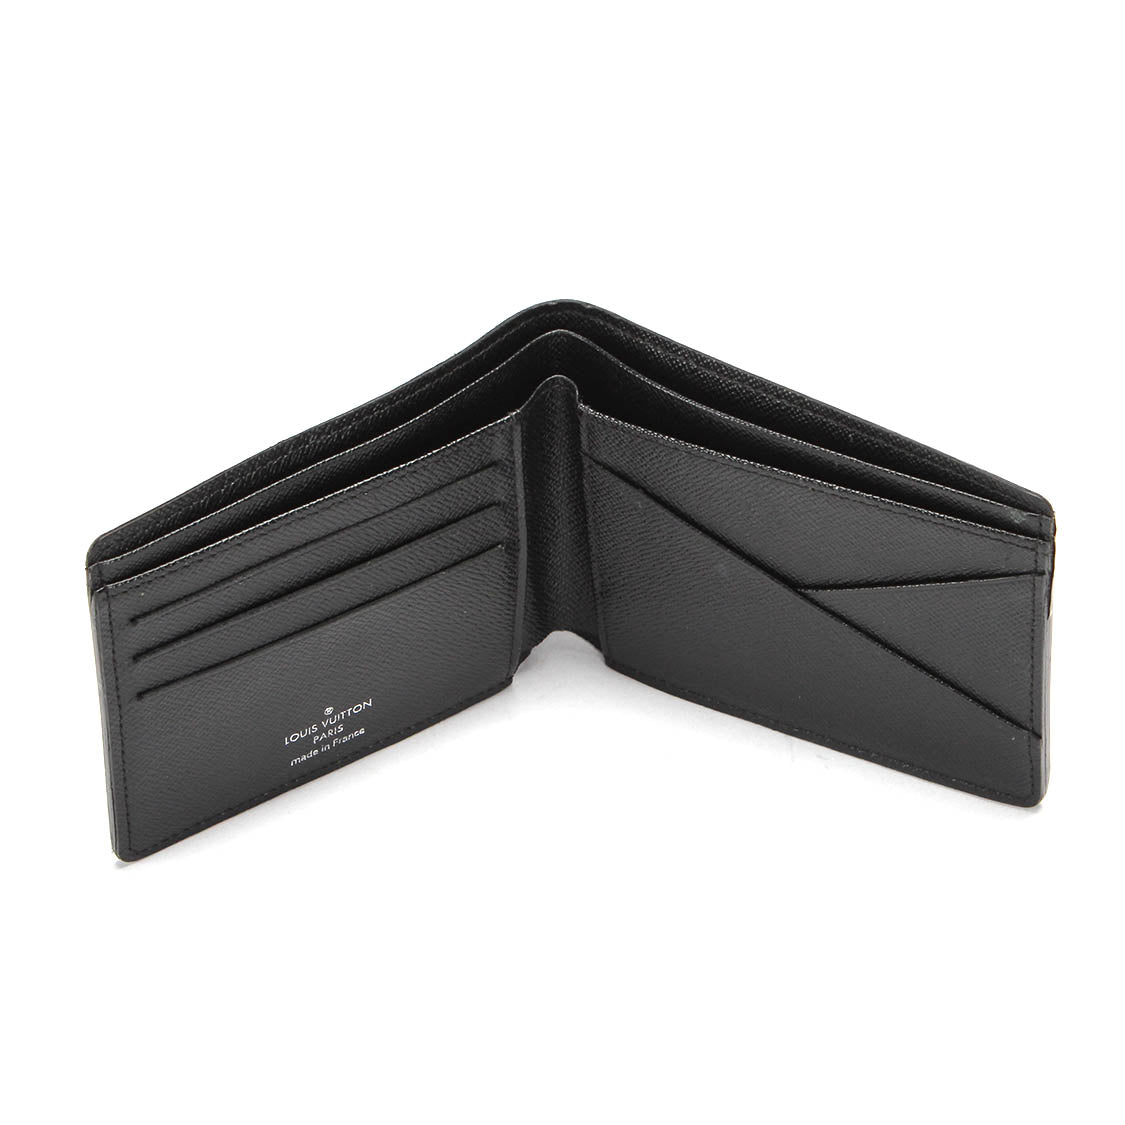 LV damier graphite multiple wallet N62663